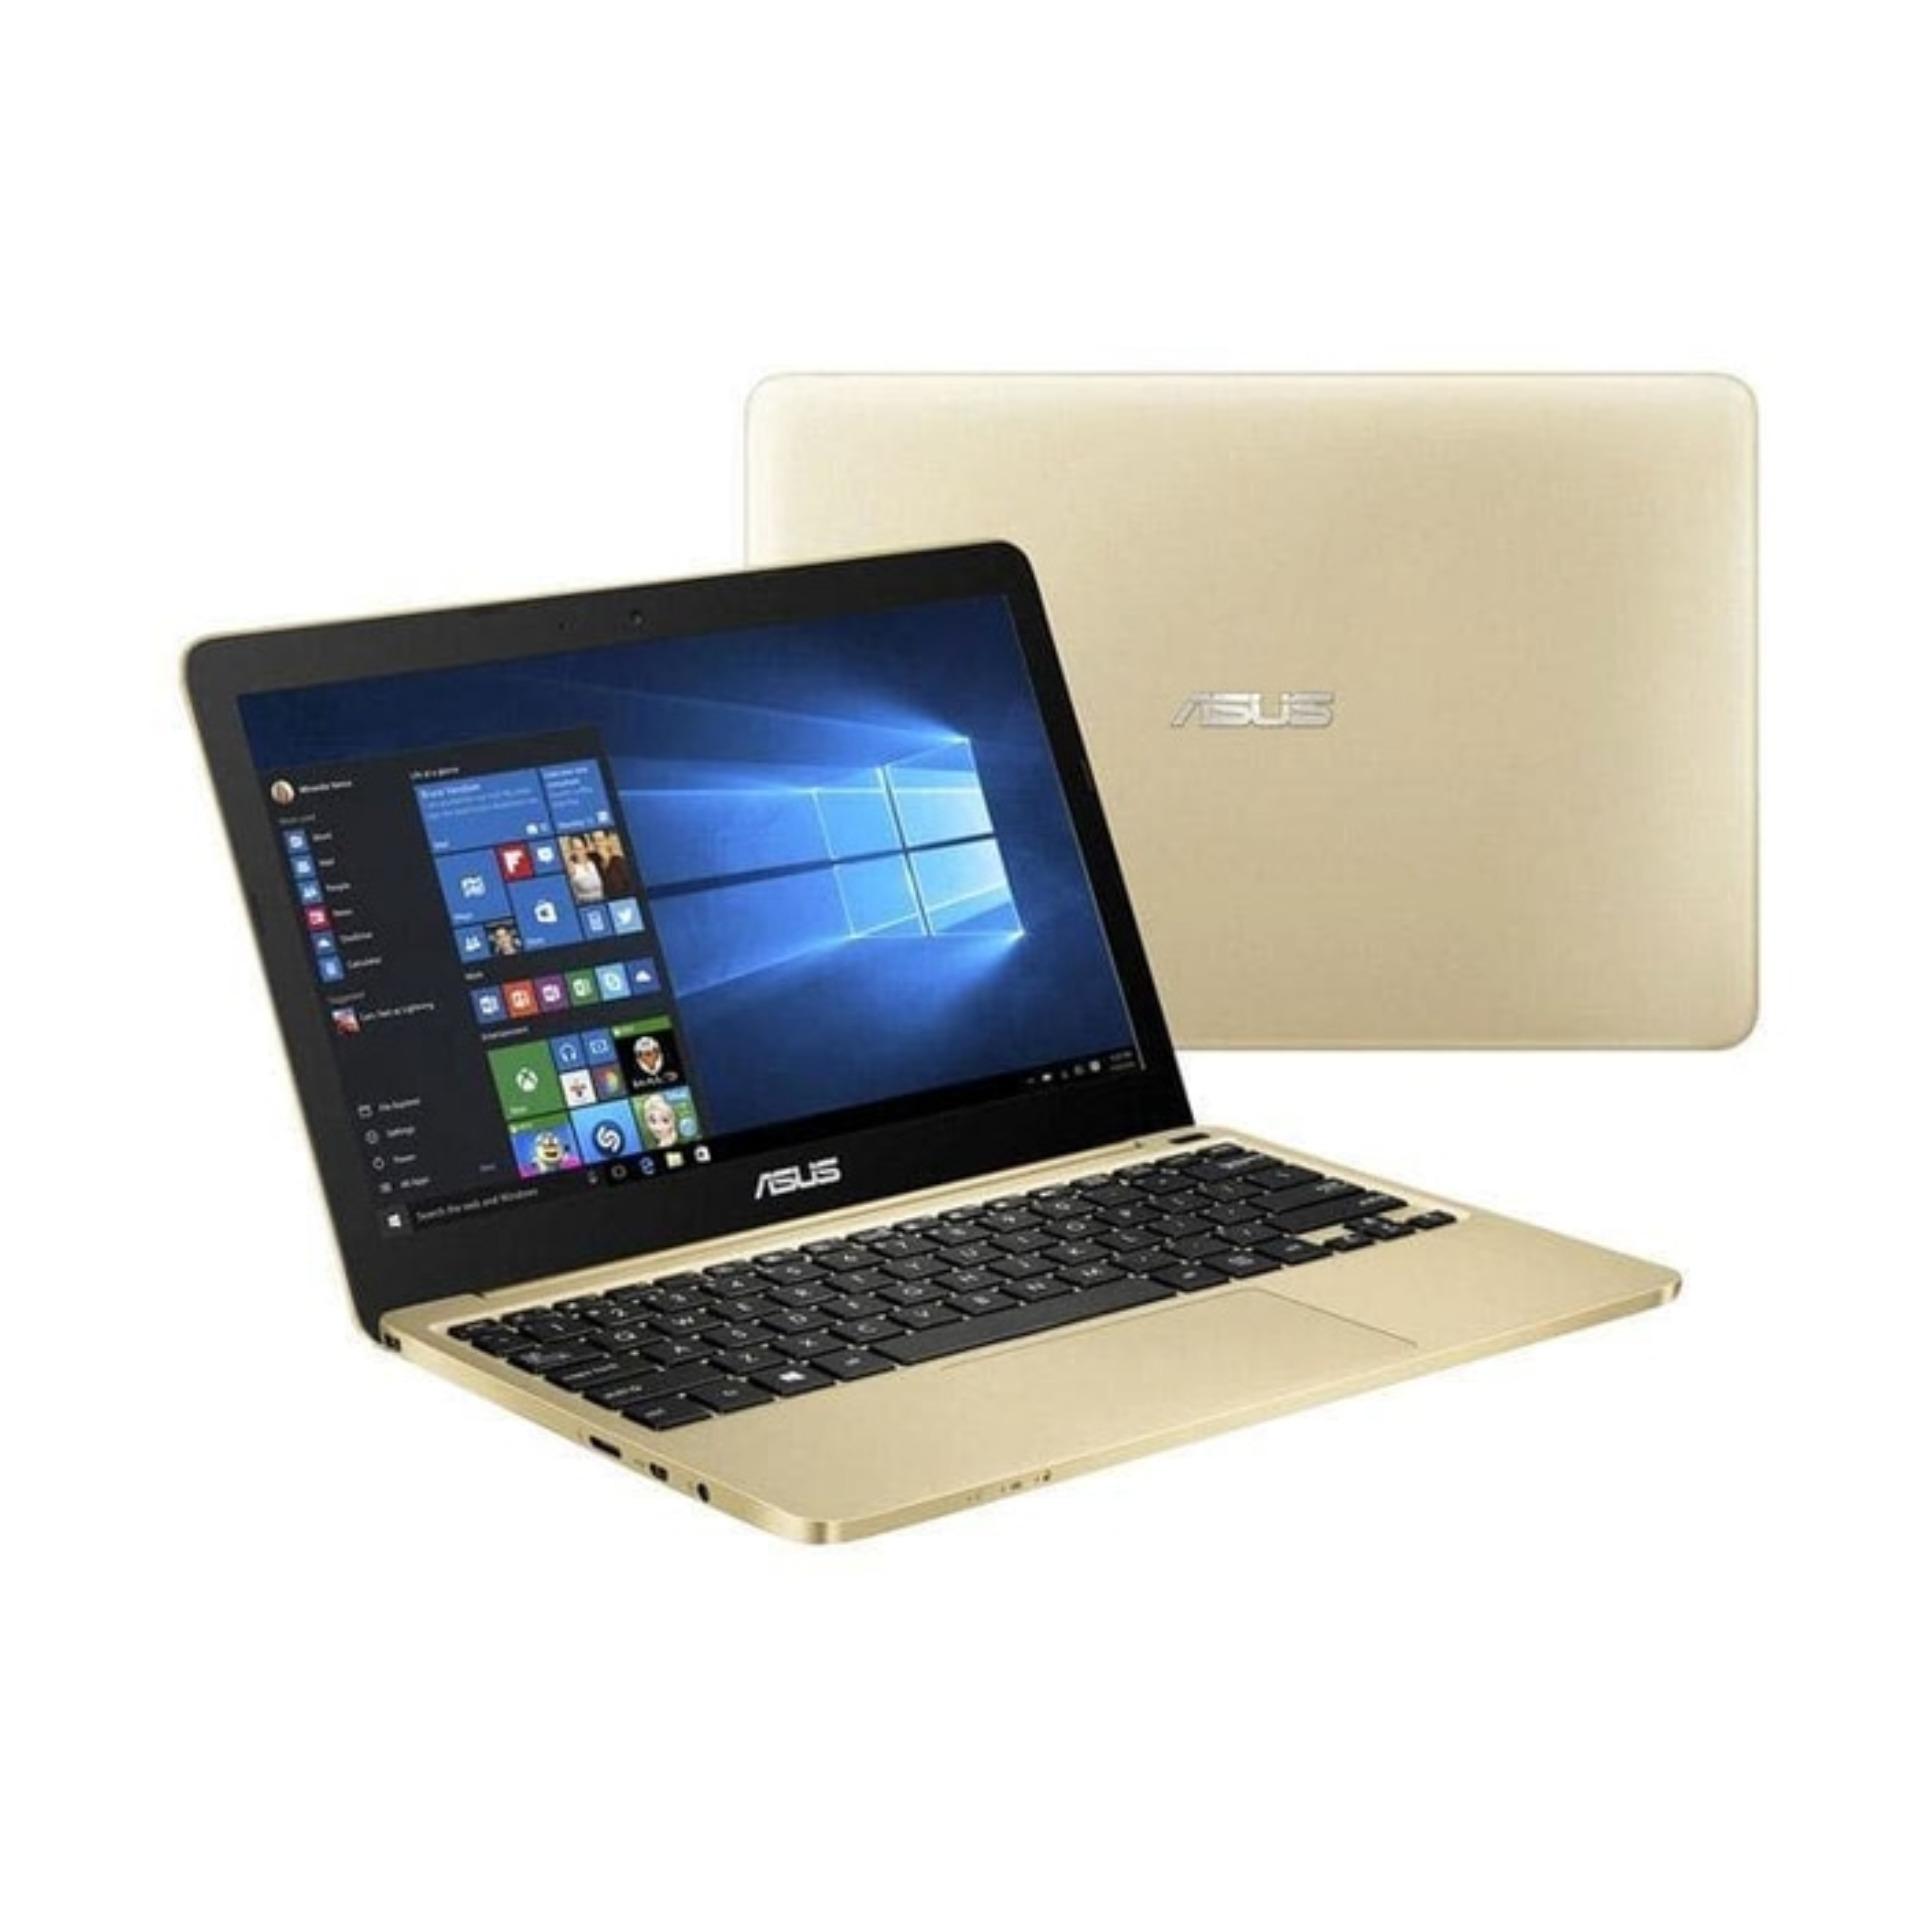 Asus Notebook A456UR-GA092D 14 I5-7200U 4G 1TB GOLDEN